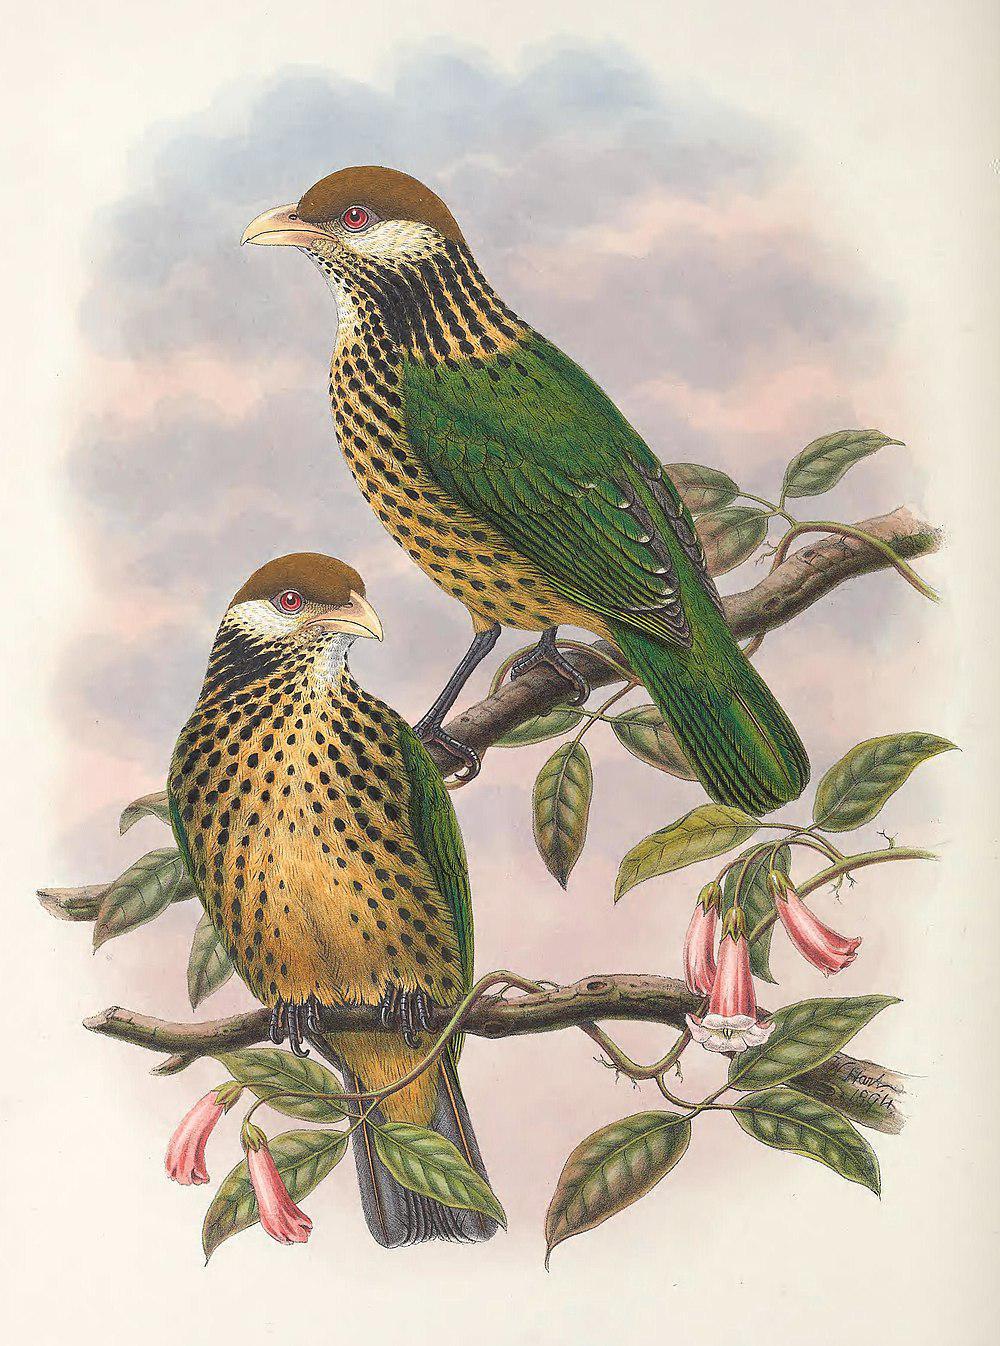 褐冠园丁鸟 / Tan-capped Catbird / Ailuroedus geislerorum